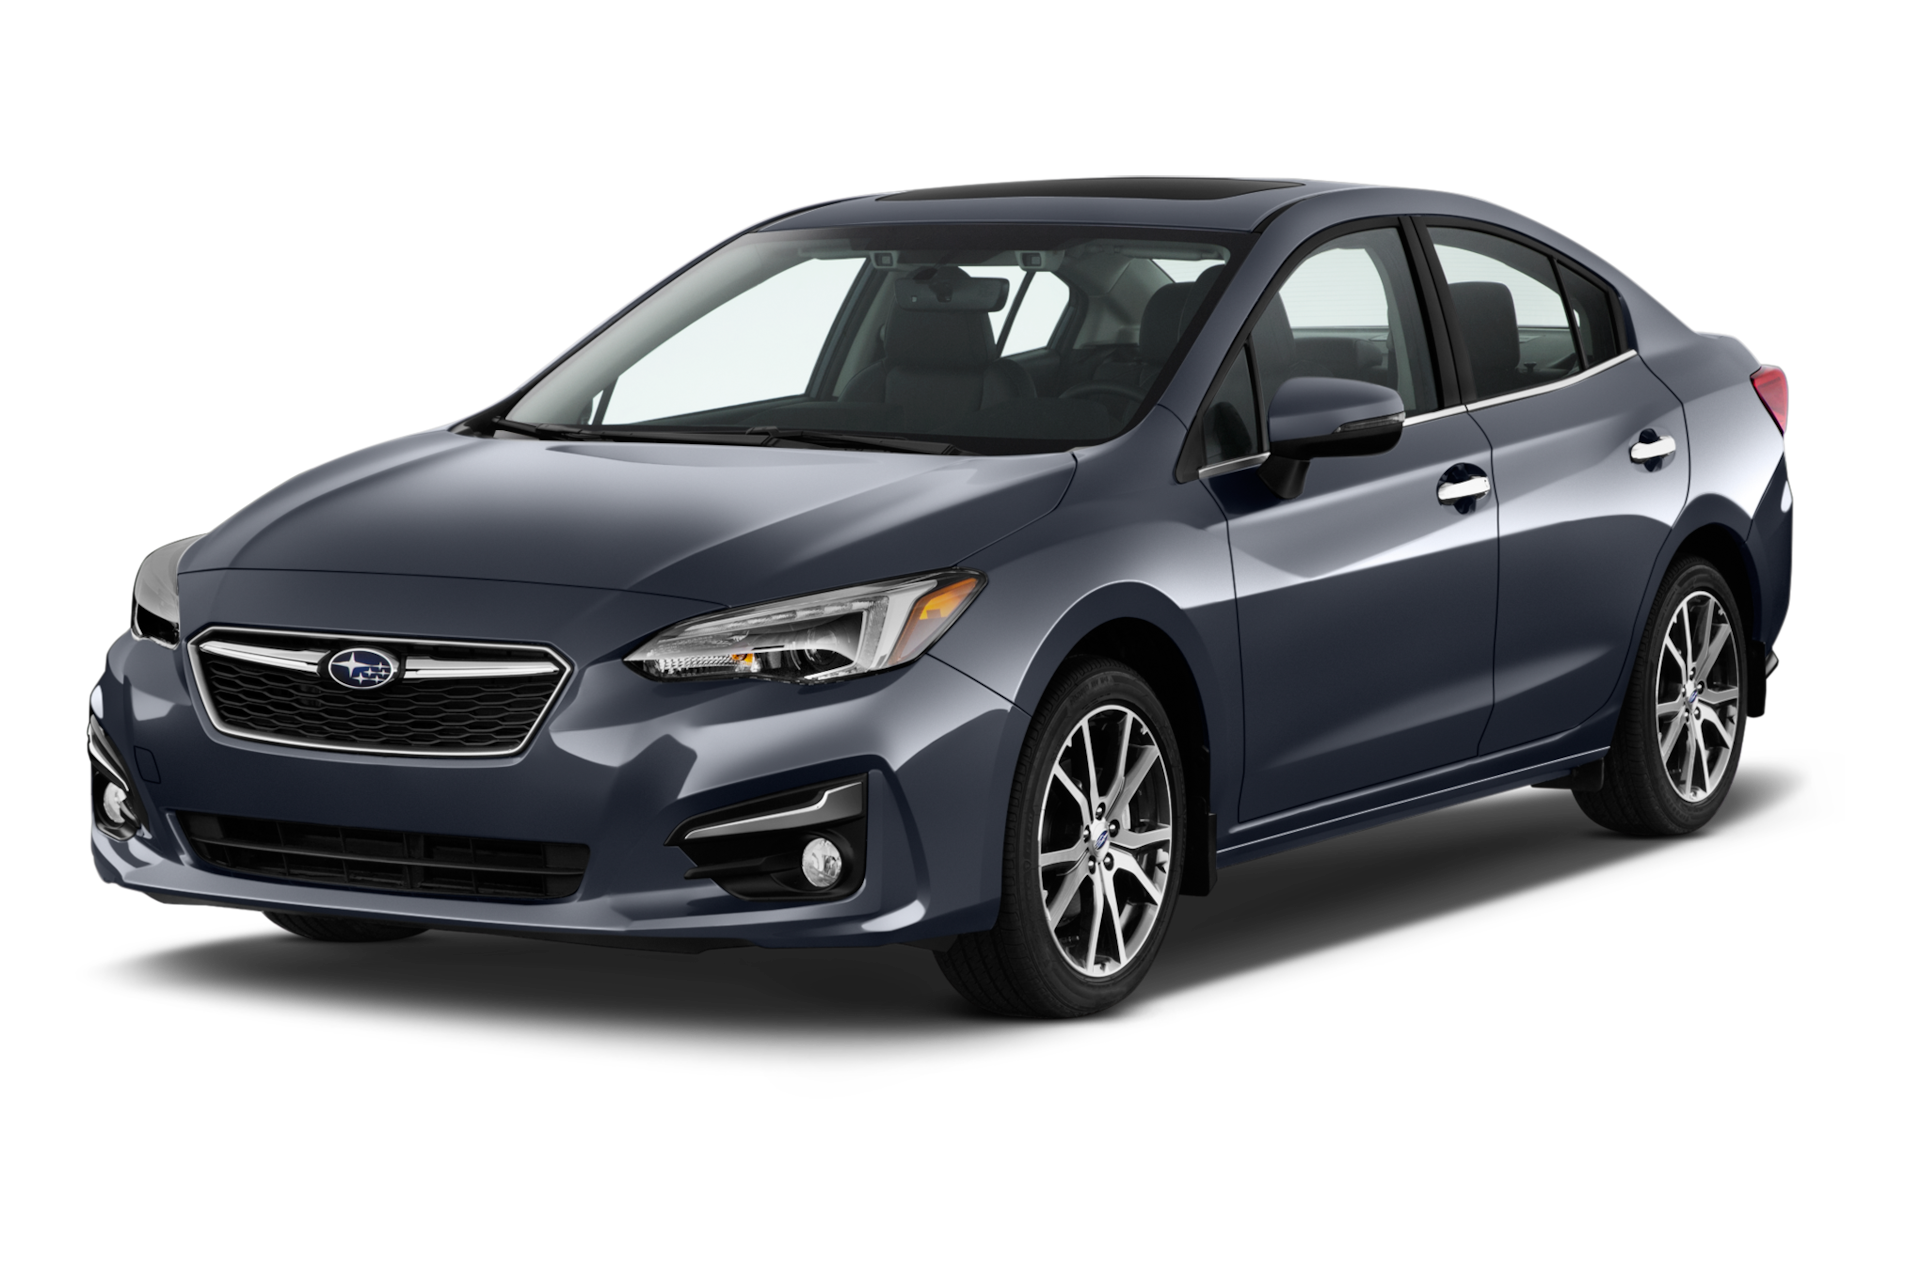 2018 Subaru Impreza Prices, Reviews, and Photos - MotorTrend